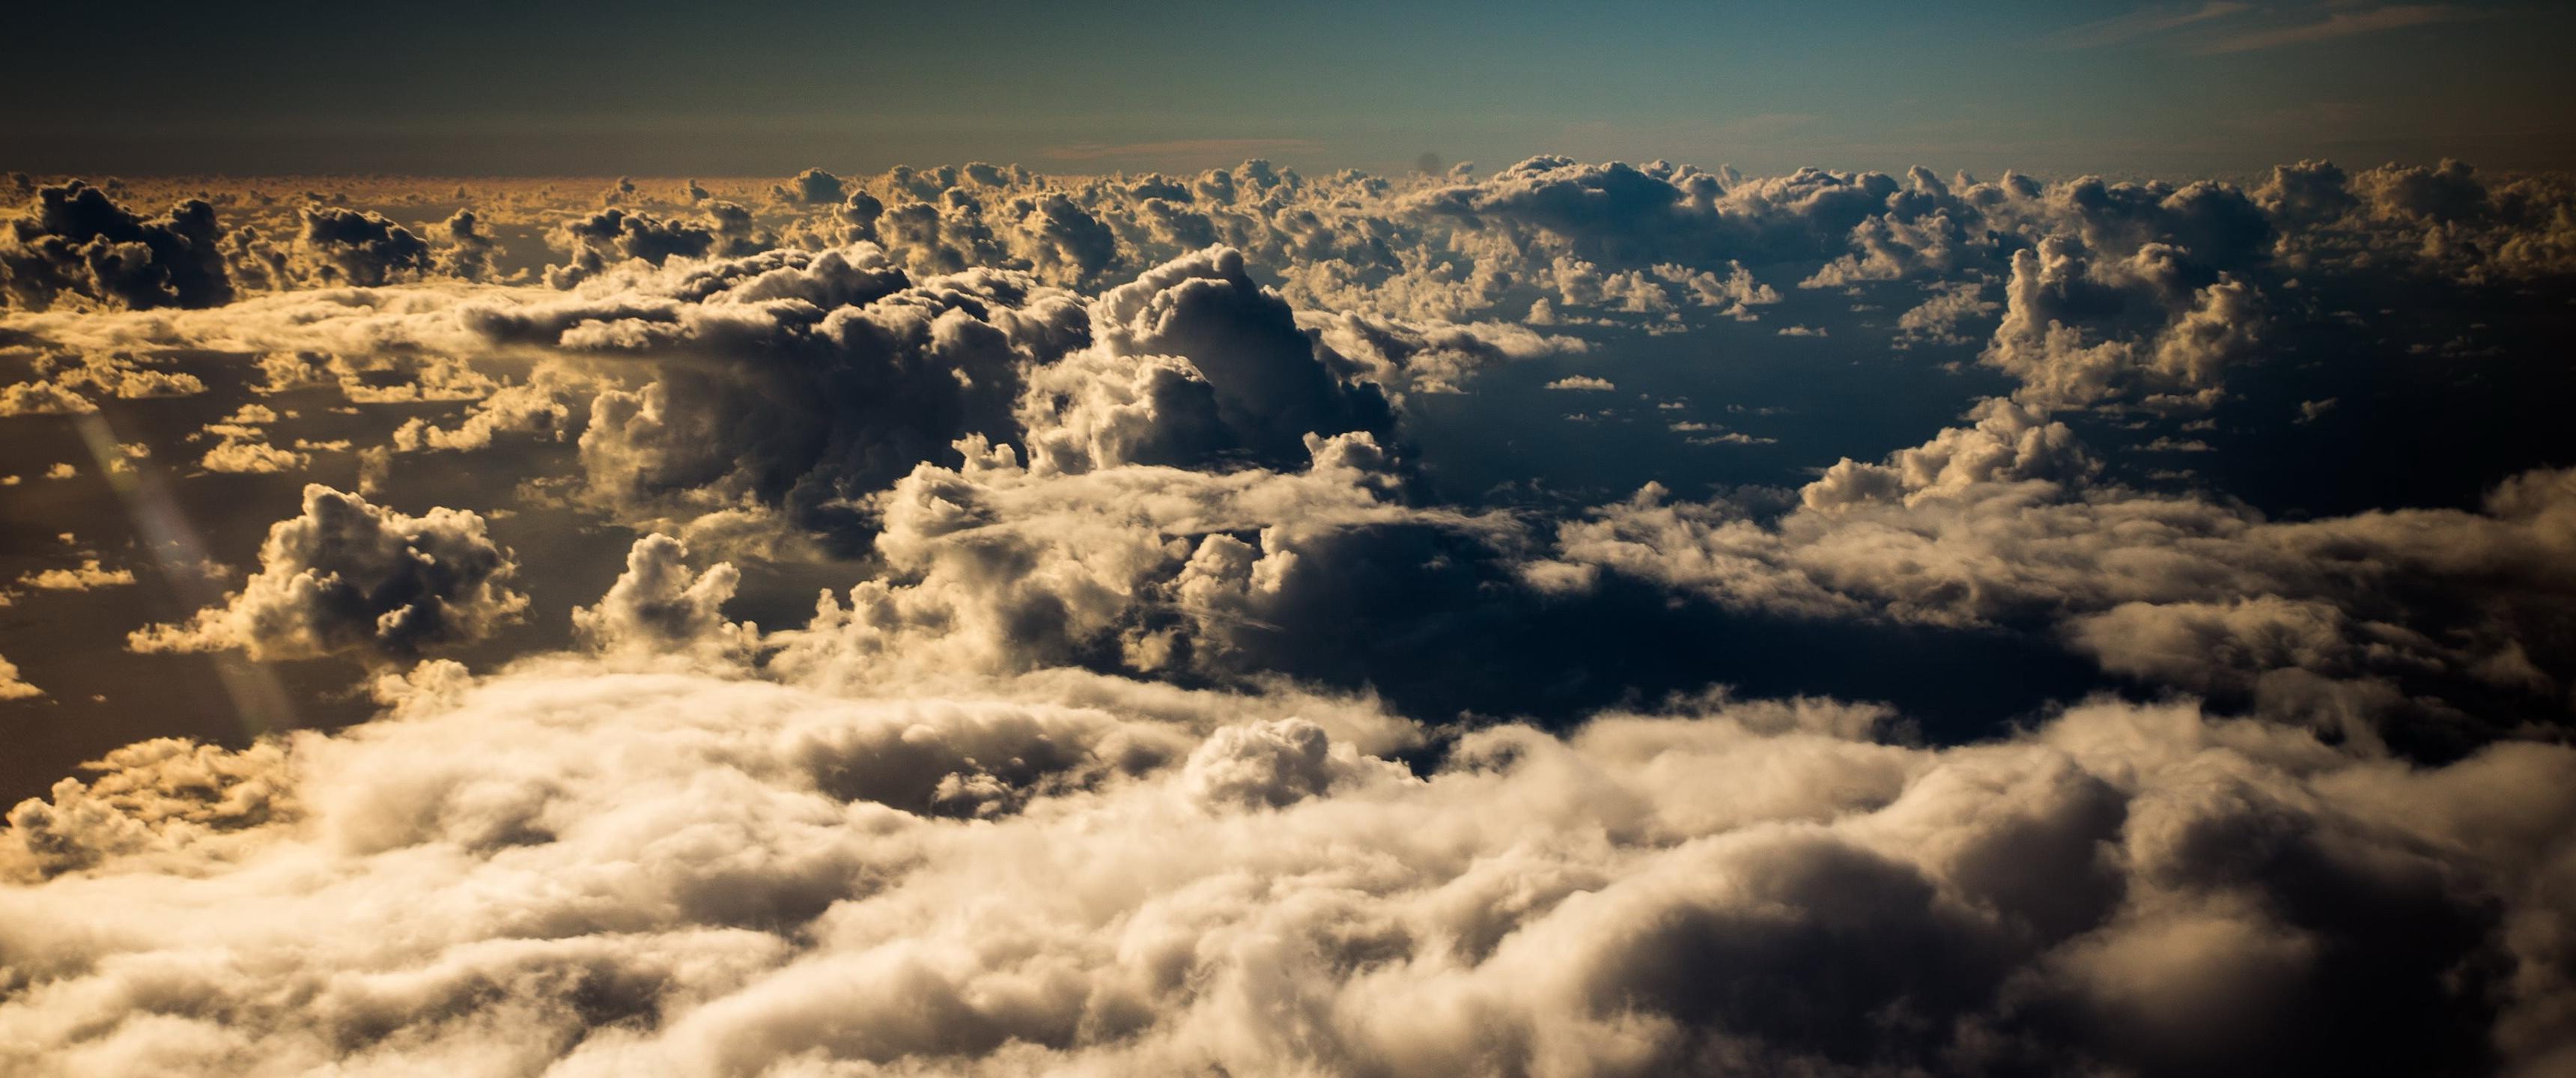 Бесплатное фото Пролетая над облаками